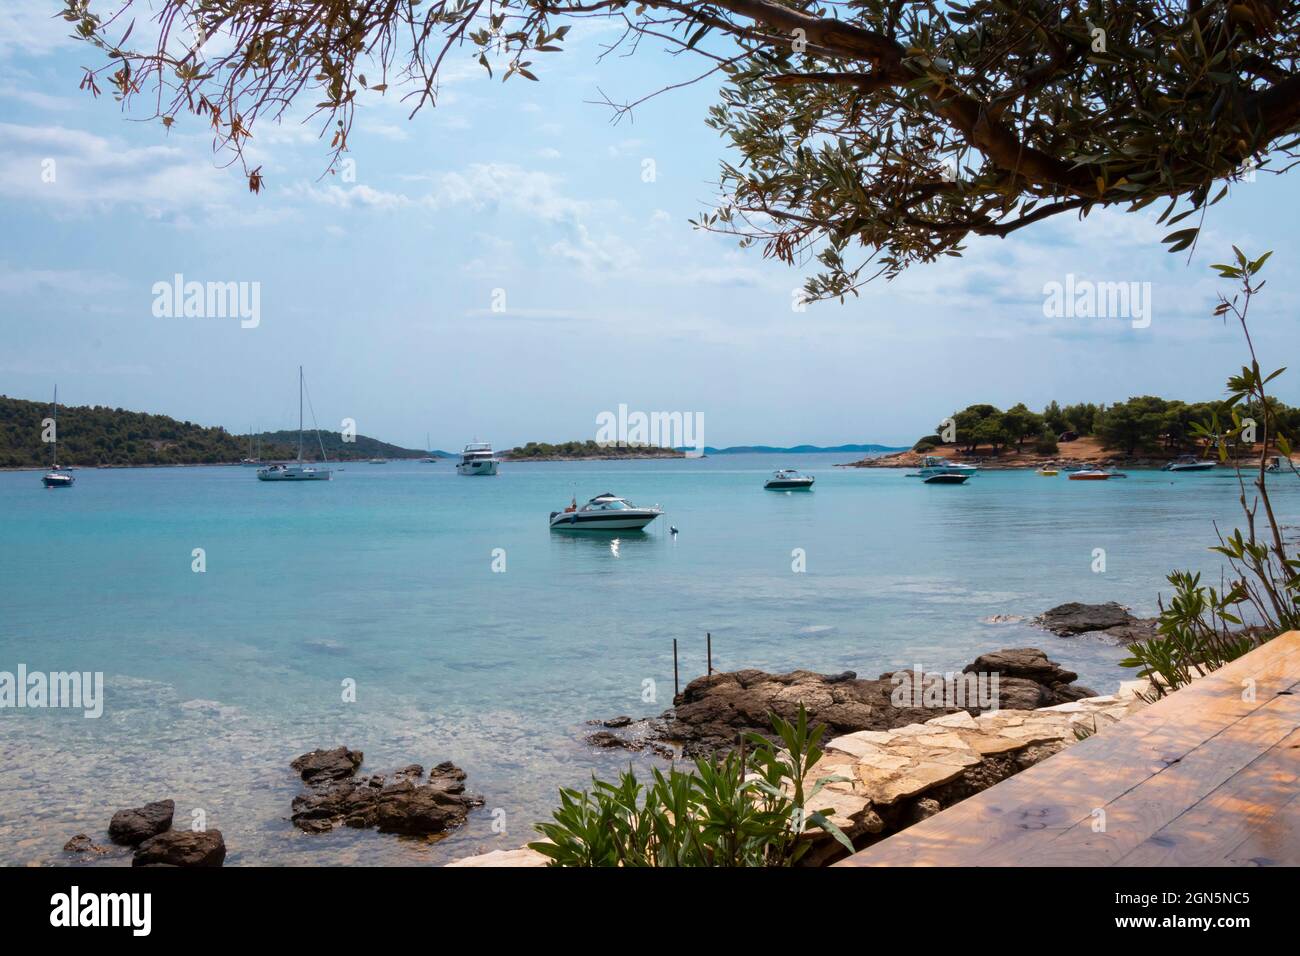 Kosirina, Murter, Croacia - 24 de agosto de 2021: Barcos amarrados en una bahía tranquila, vista desde el bar de la playa a través de la vegetación Foto de stock